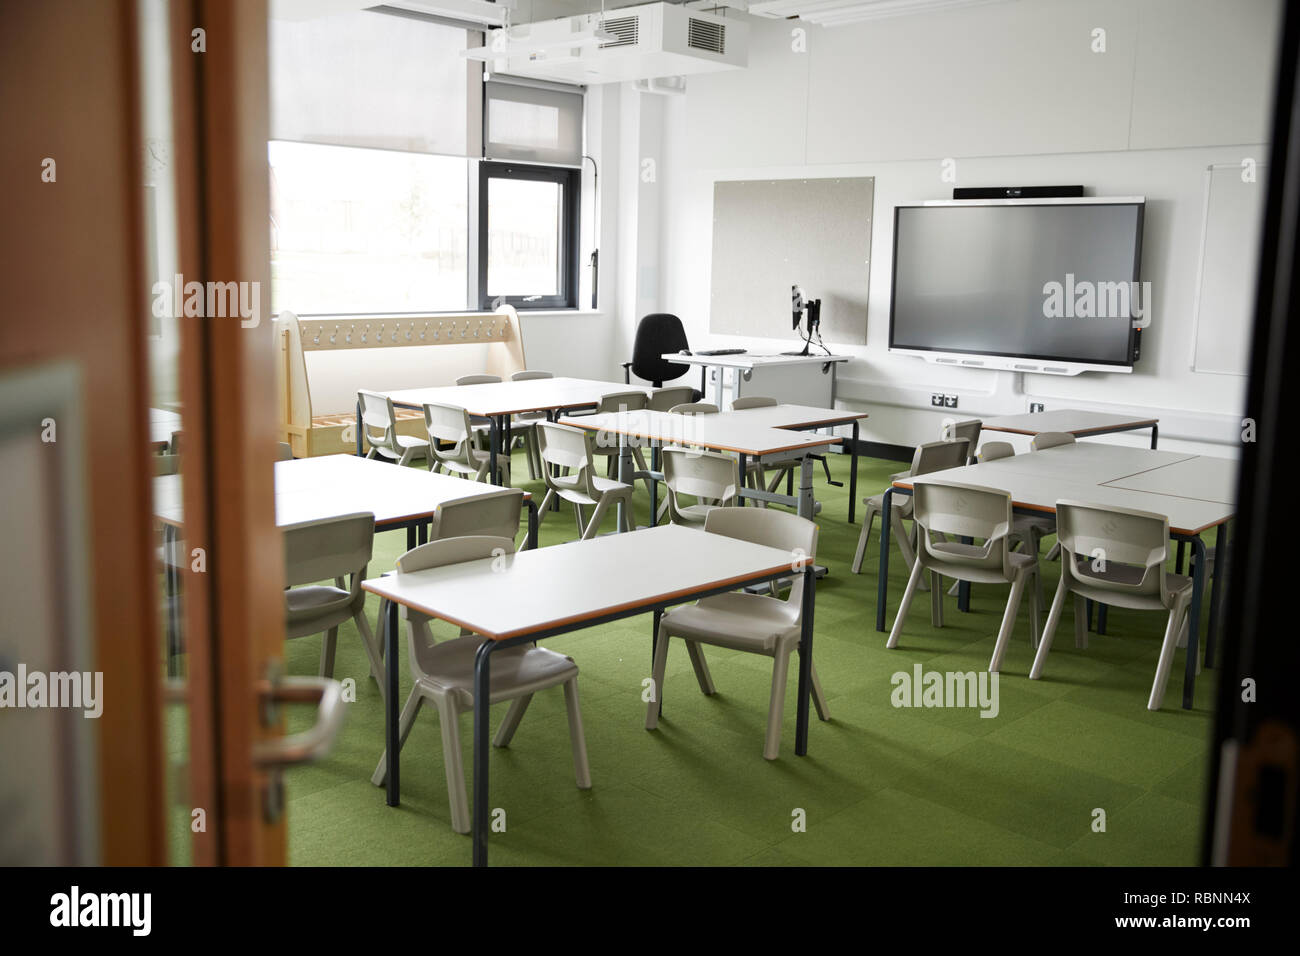 Une classe vide dans une école primaire avec un bureau et des chaises blanches, vu de porte Banque D'Images